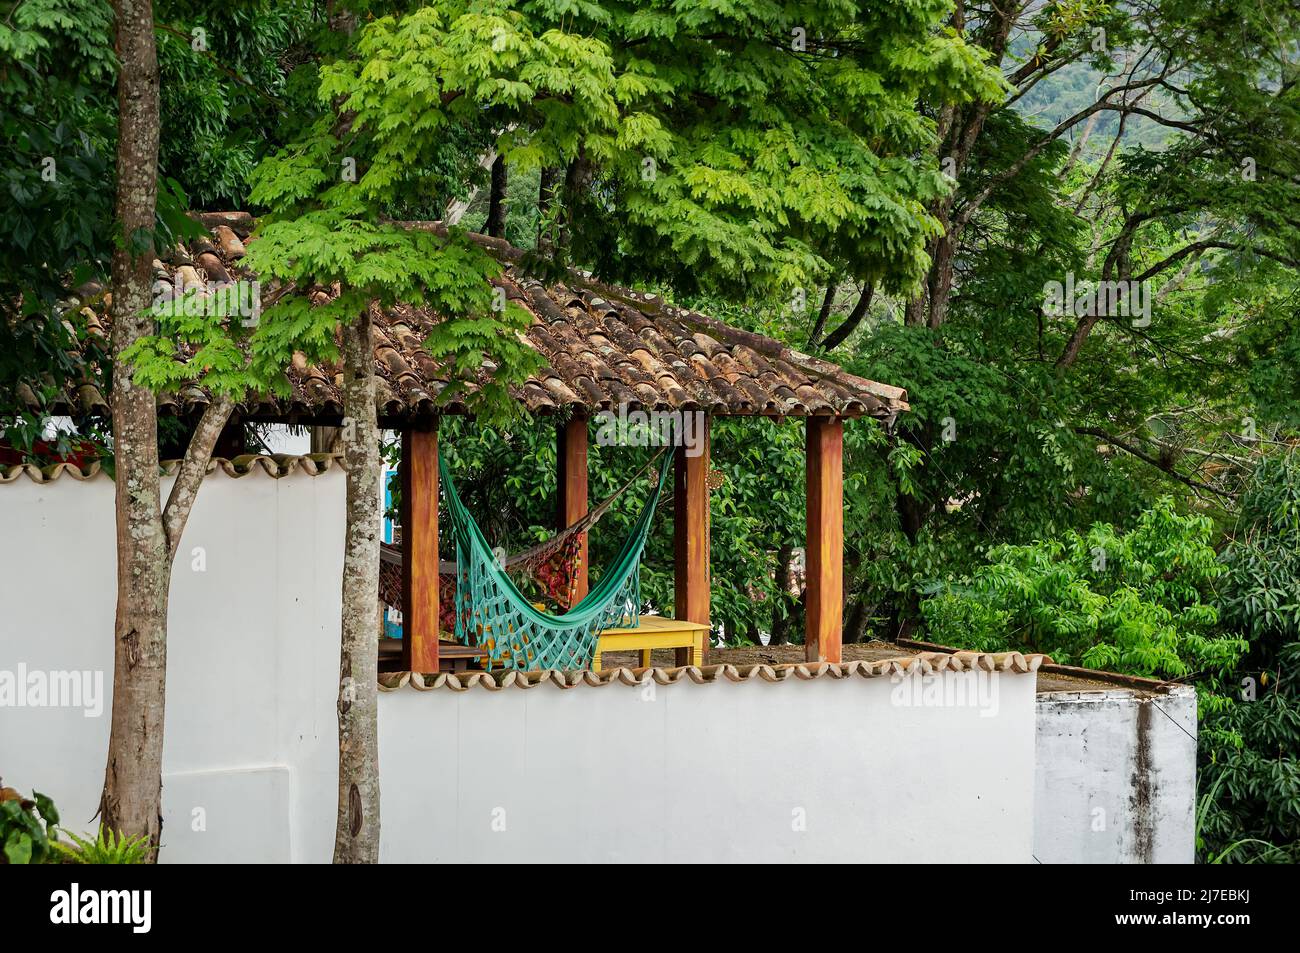 Un espace extérieur avec des hamacs de jardin colorés sous un toit de tuiles zone extérieure couverte d'une maison voisine comme vu de la rue Direita. Banque D'Images